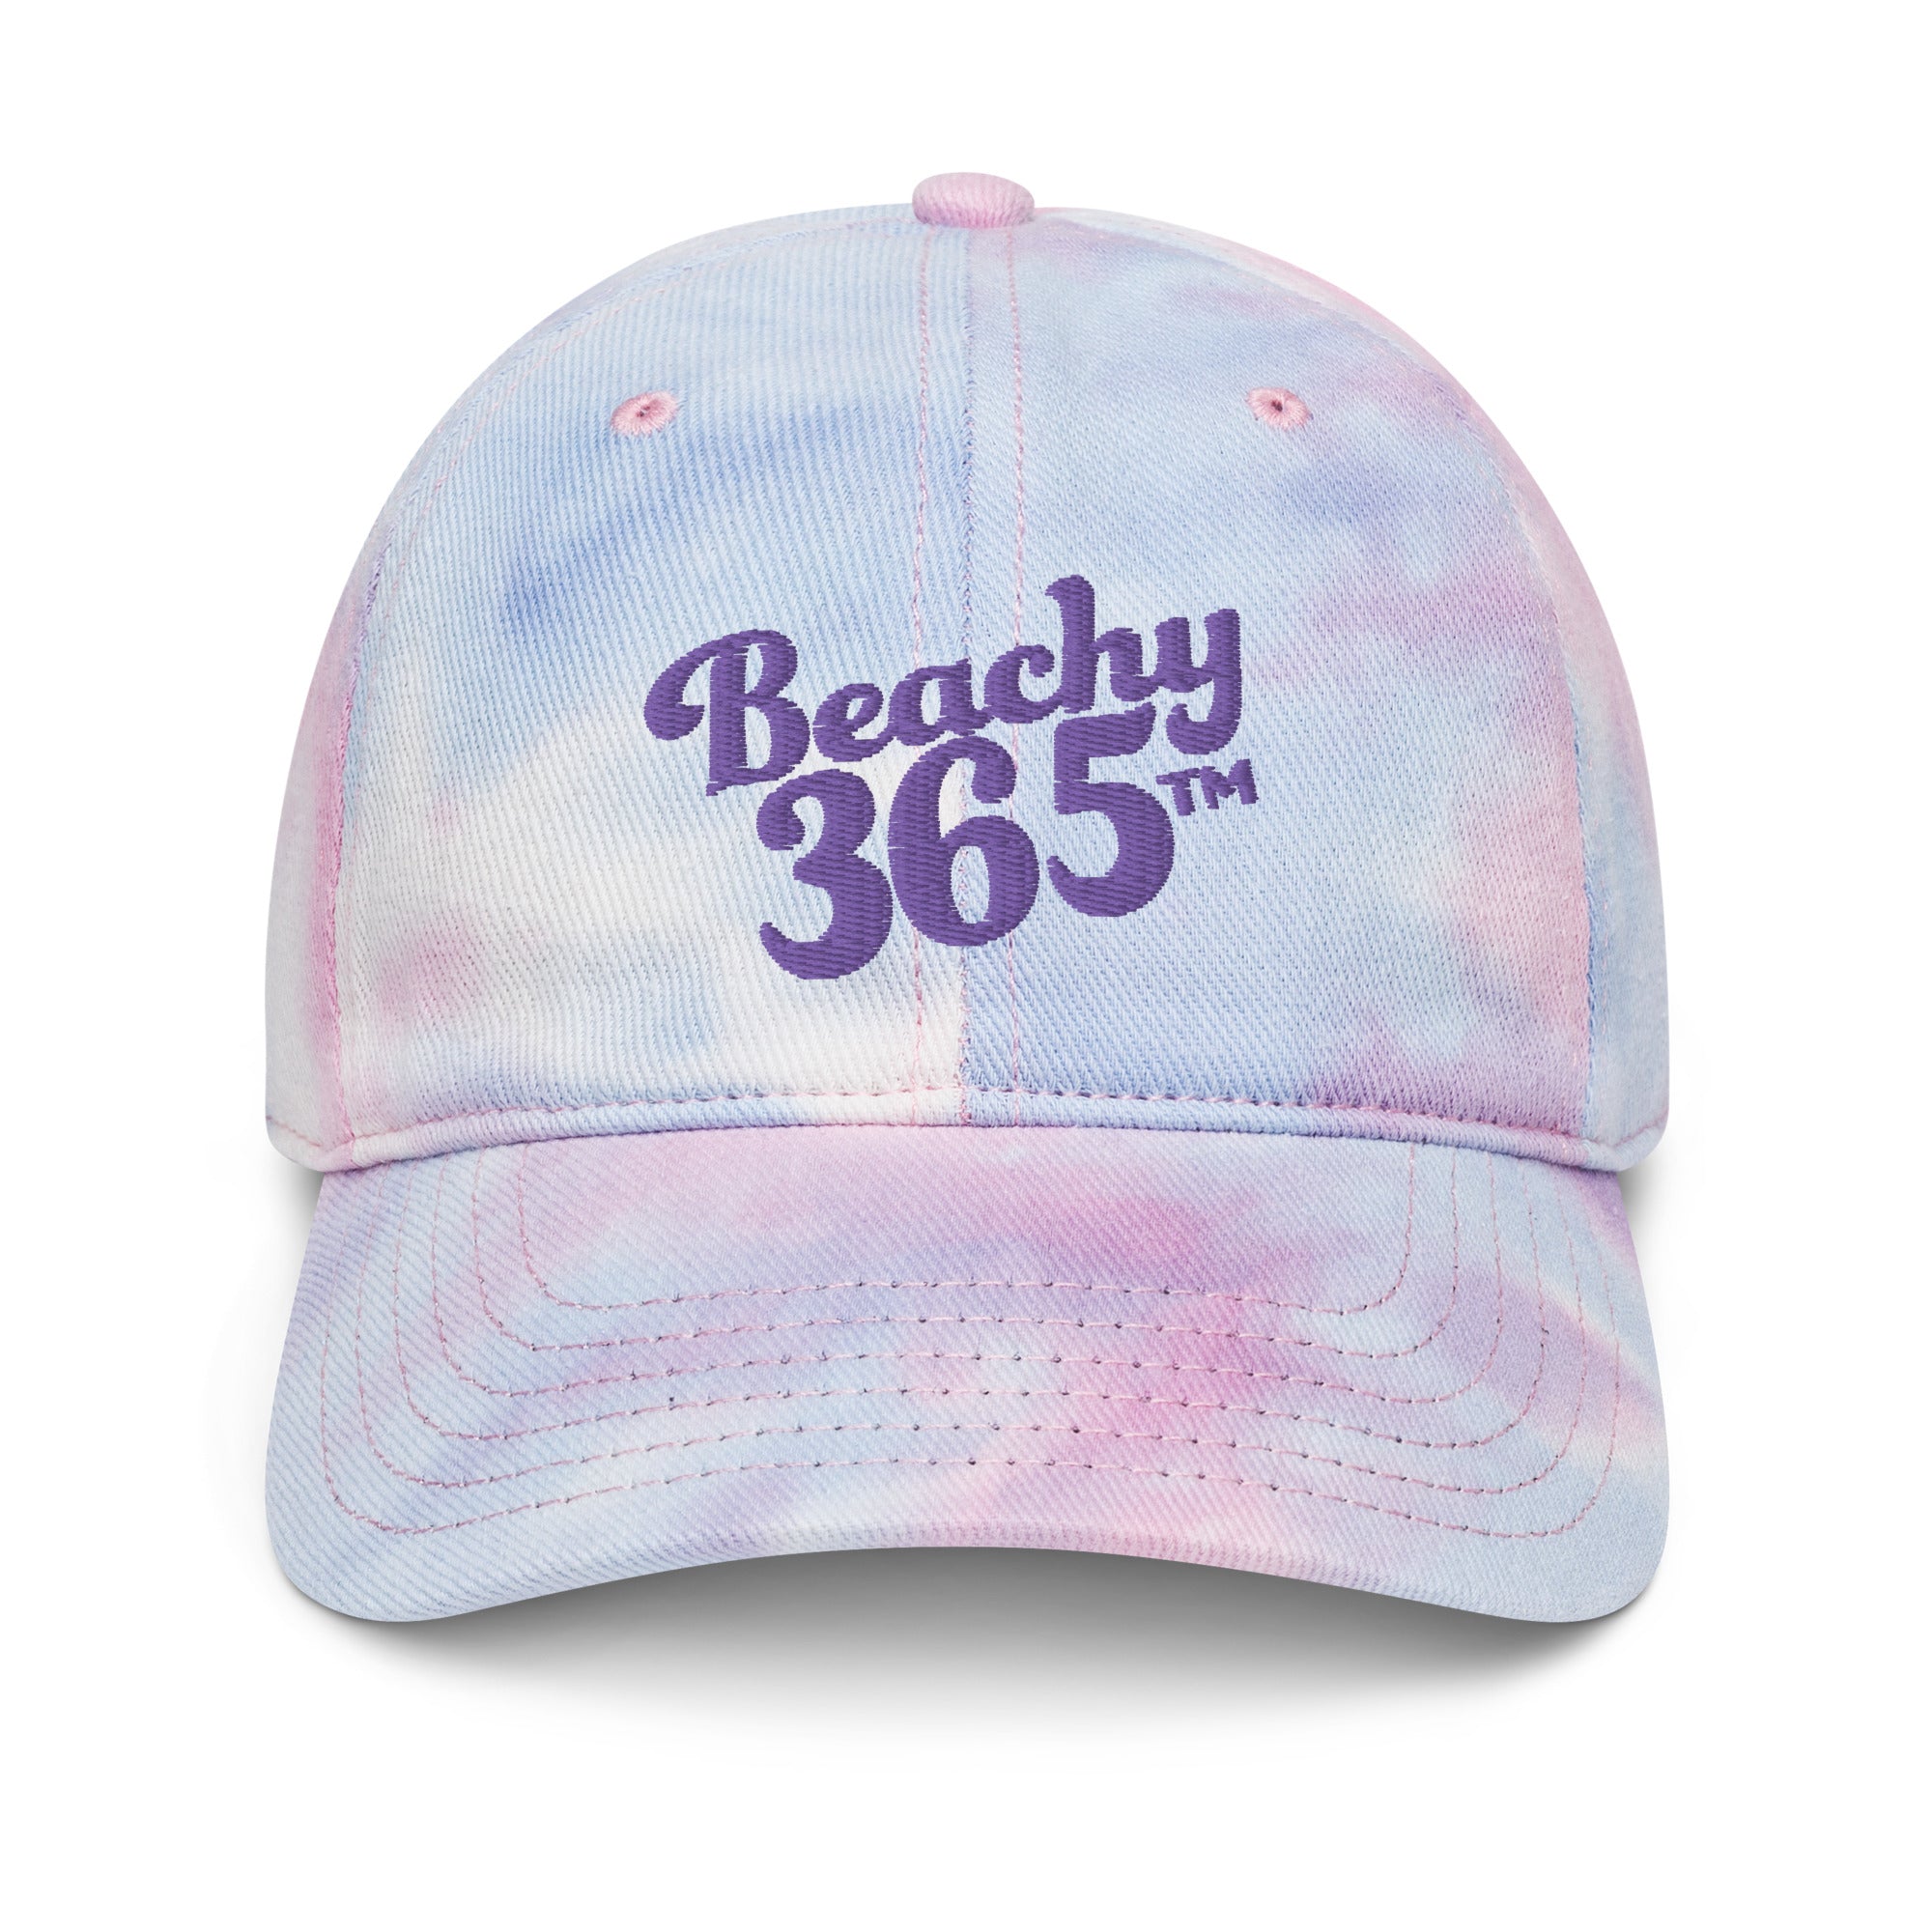 Beachy365 Tie Dye Hat